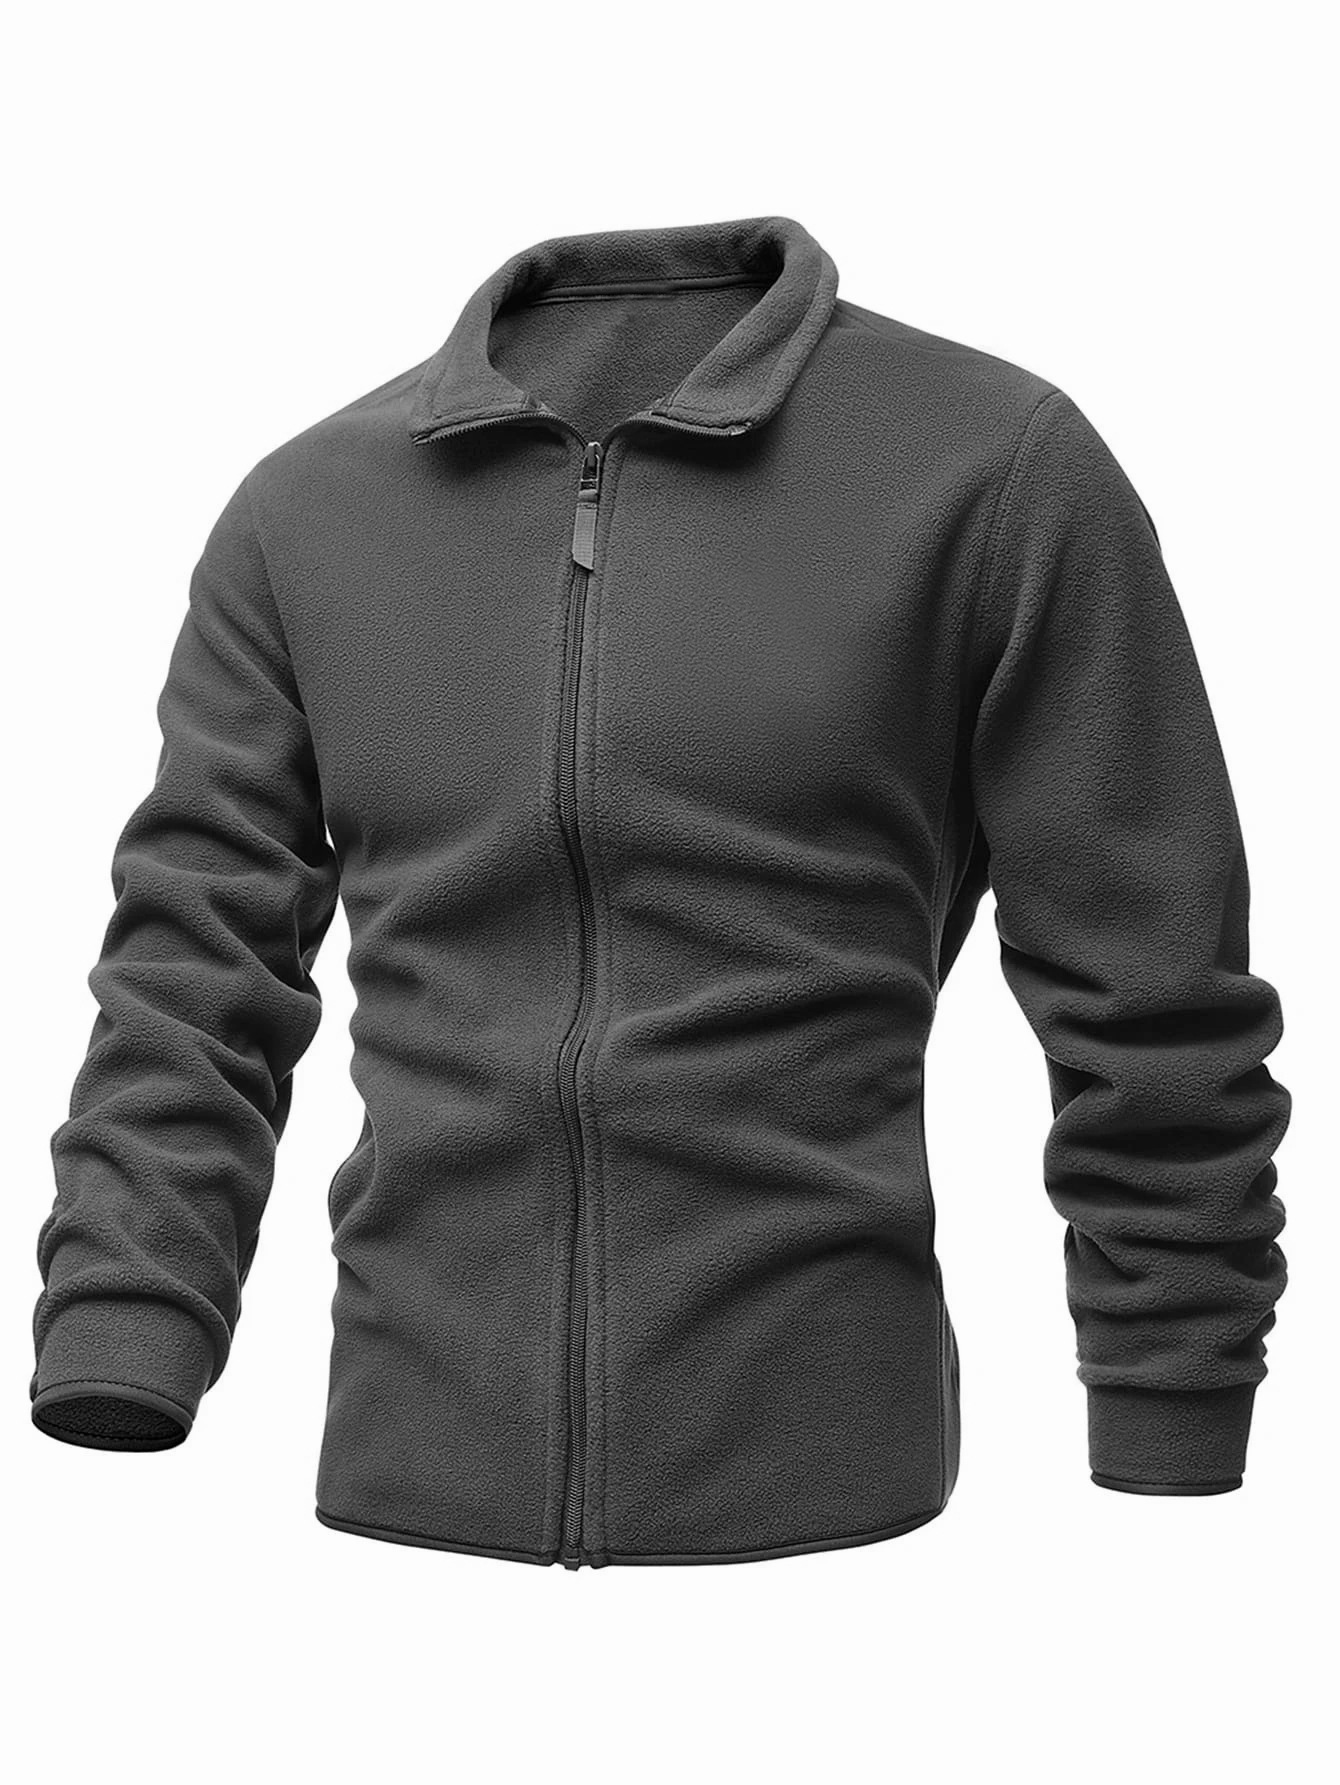 Men's Outdoor Fleece Casual Chic Stand Collar Zipper Solid Color Jacket